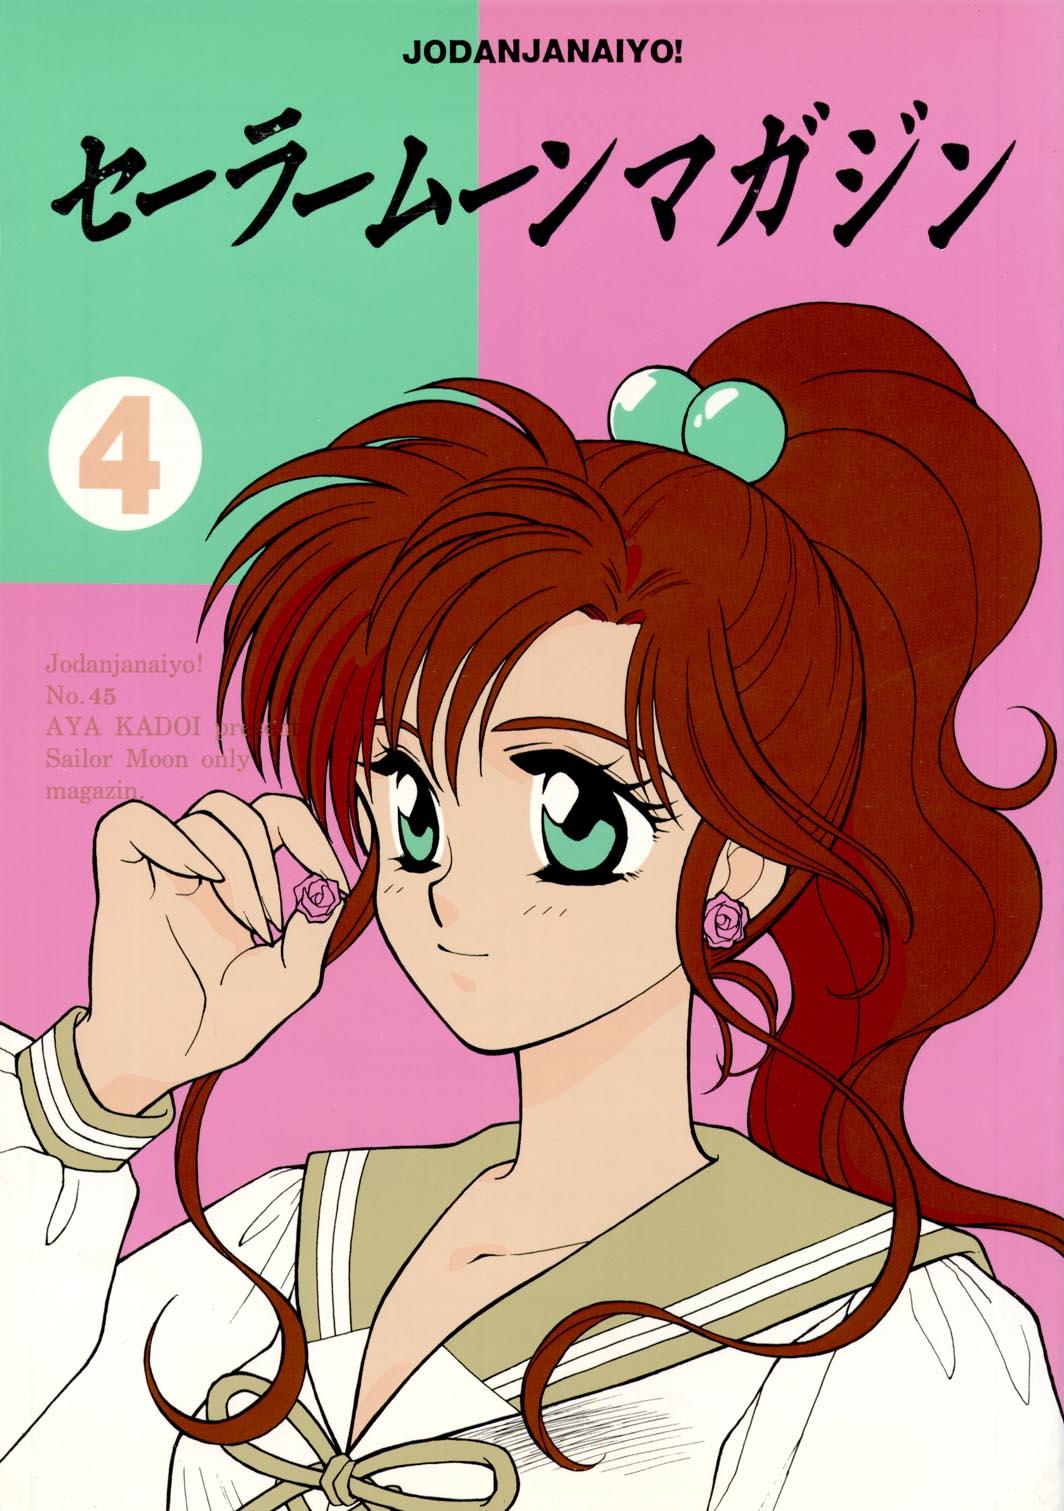 Sailor Moon JodanJanaiyo 84